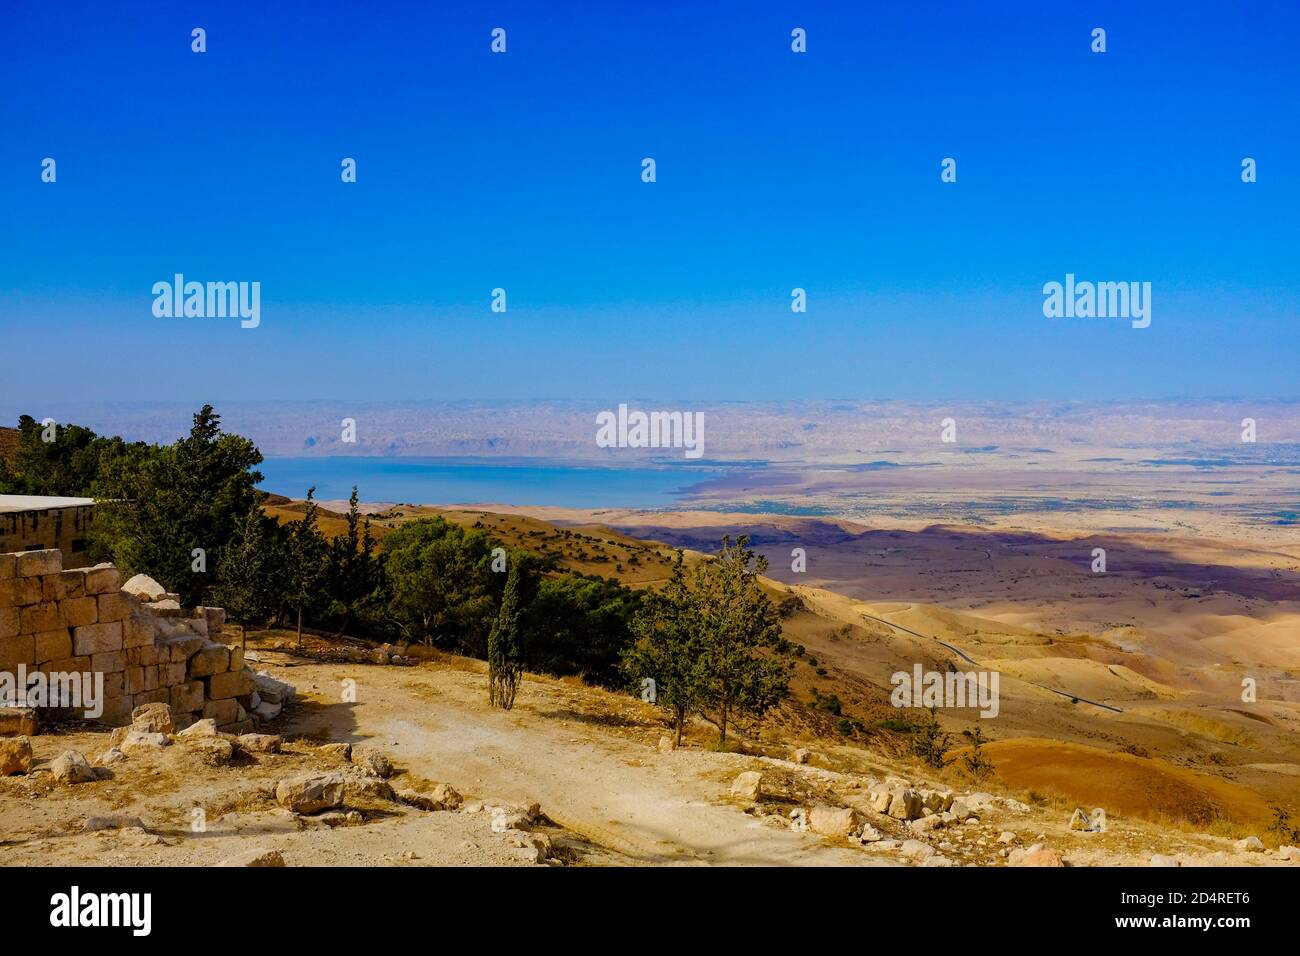 Le point de vue de la Terre promise que Moïse a vu du Mont Nebo (Deutéronome 34:1-6), Jordanie Banque D'Images